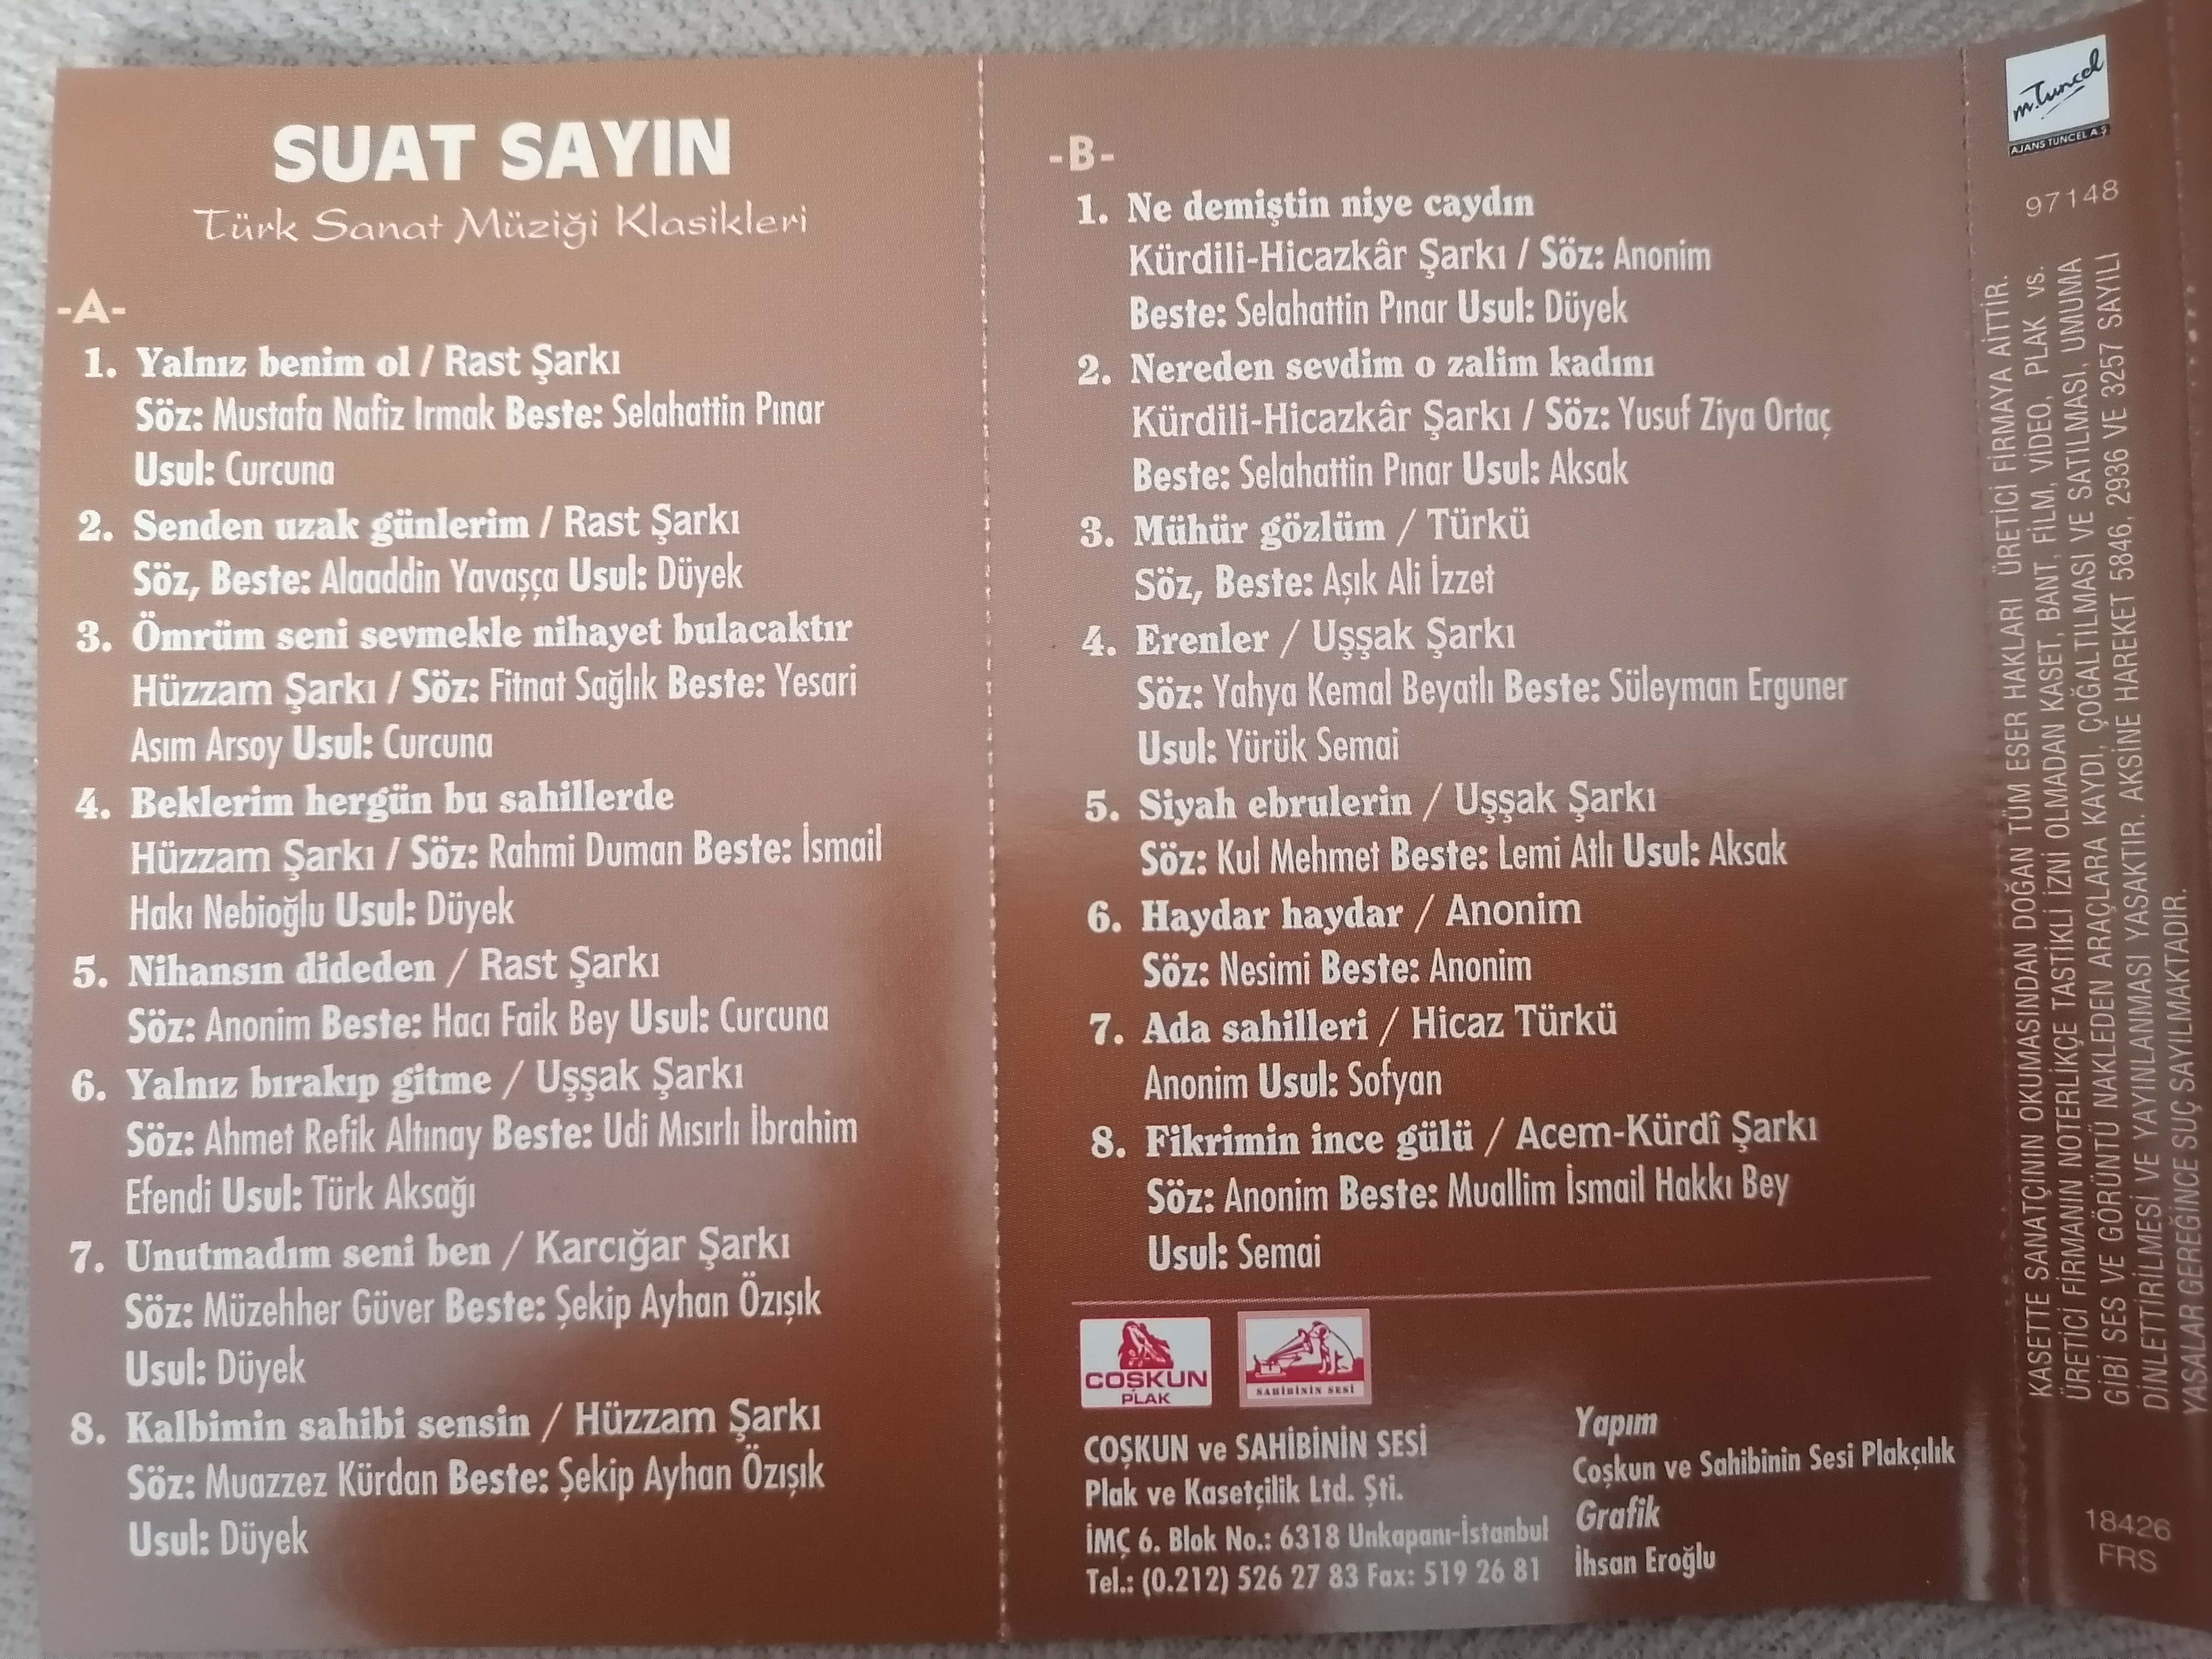 SUAT SAYIN - Türk Sanat Müziği Klasikleri - 1987 Türkiye Basım 2. El Kaset